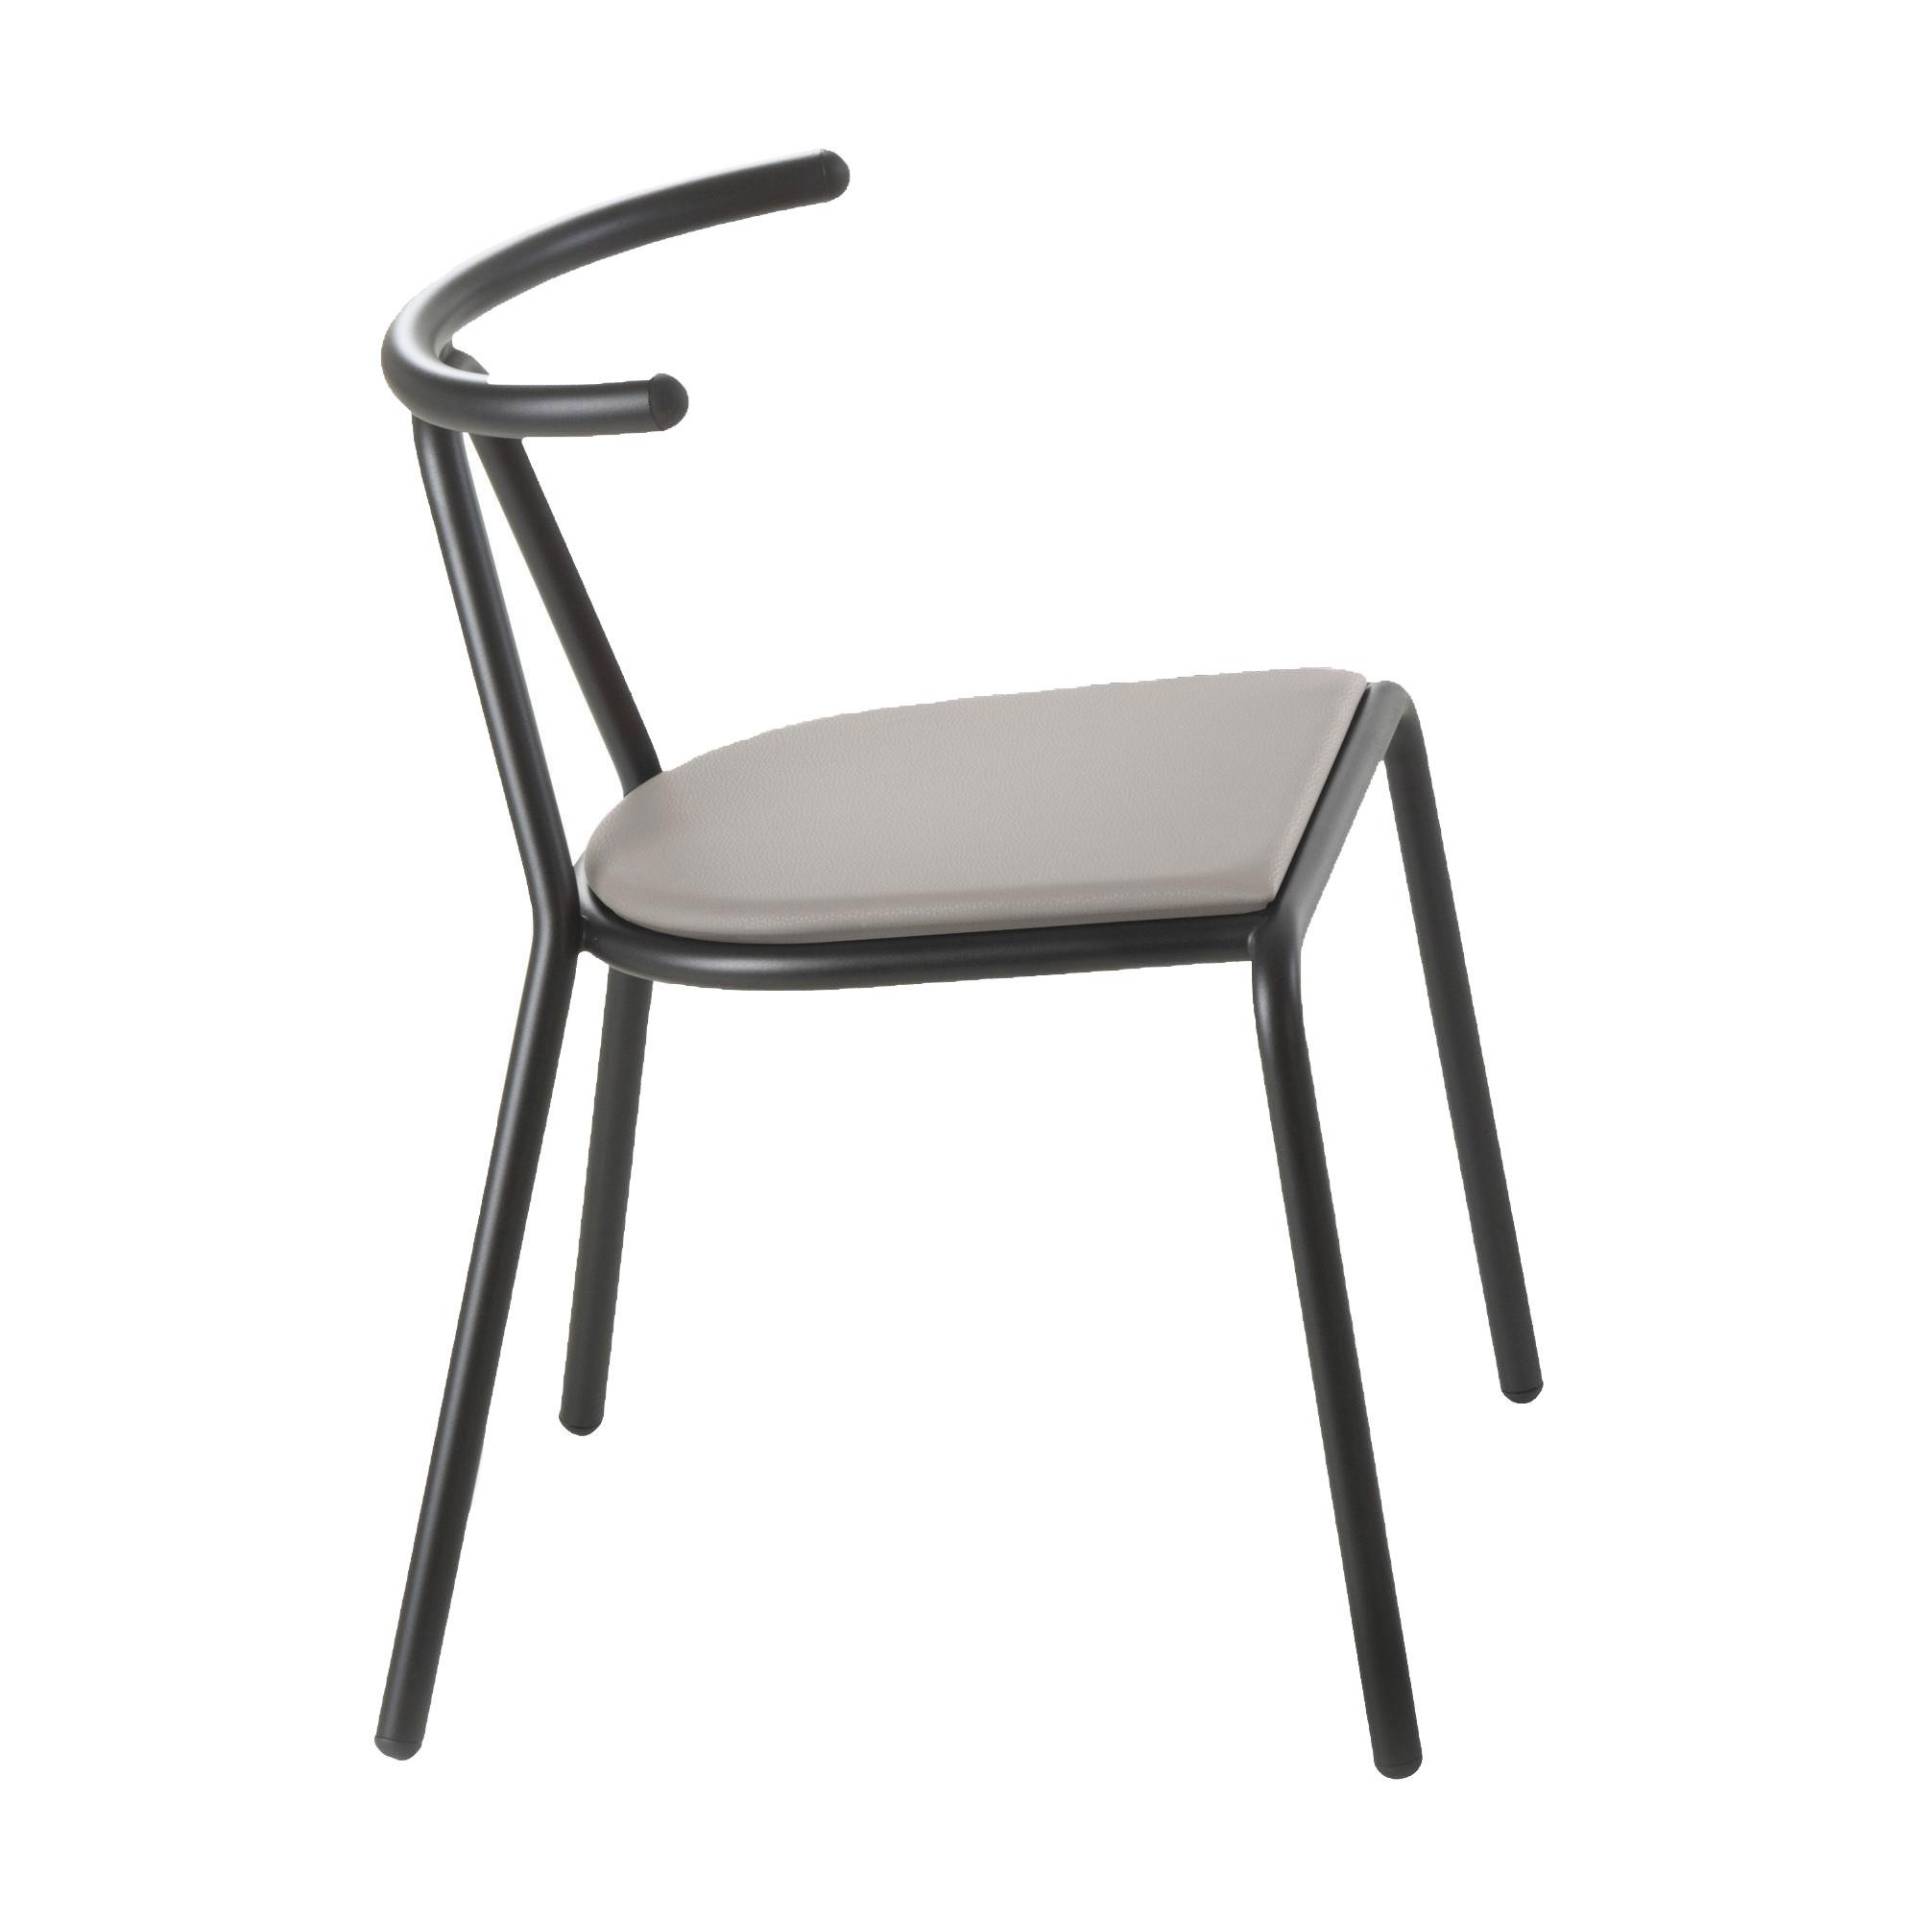 B-Line - Toro Stuhl Sitzfläche Platinum Flukso - grau/Sitzfläche: Platinum Flukso/Gestell schwarz/BxHxT 55x73,5x54cm von B-Line